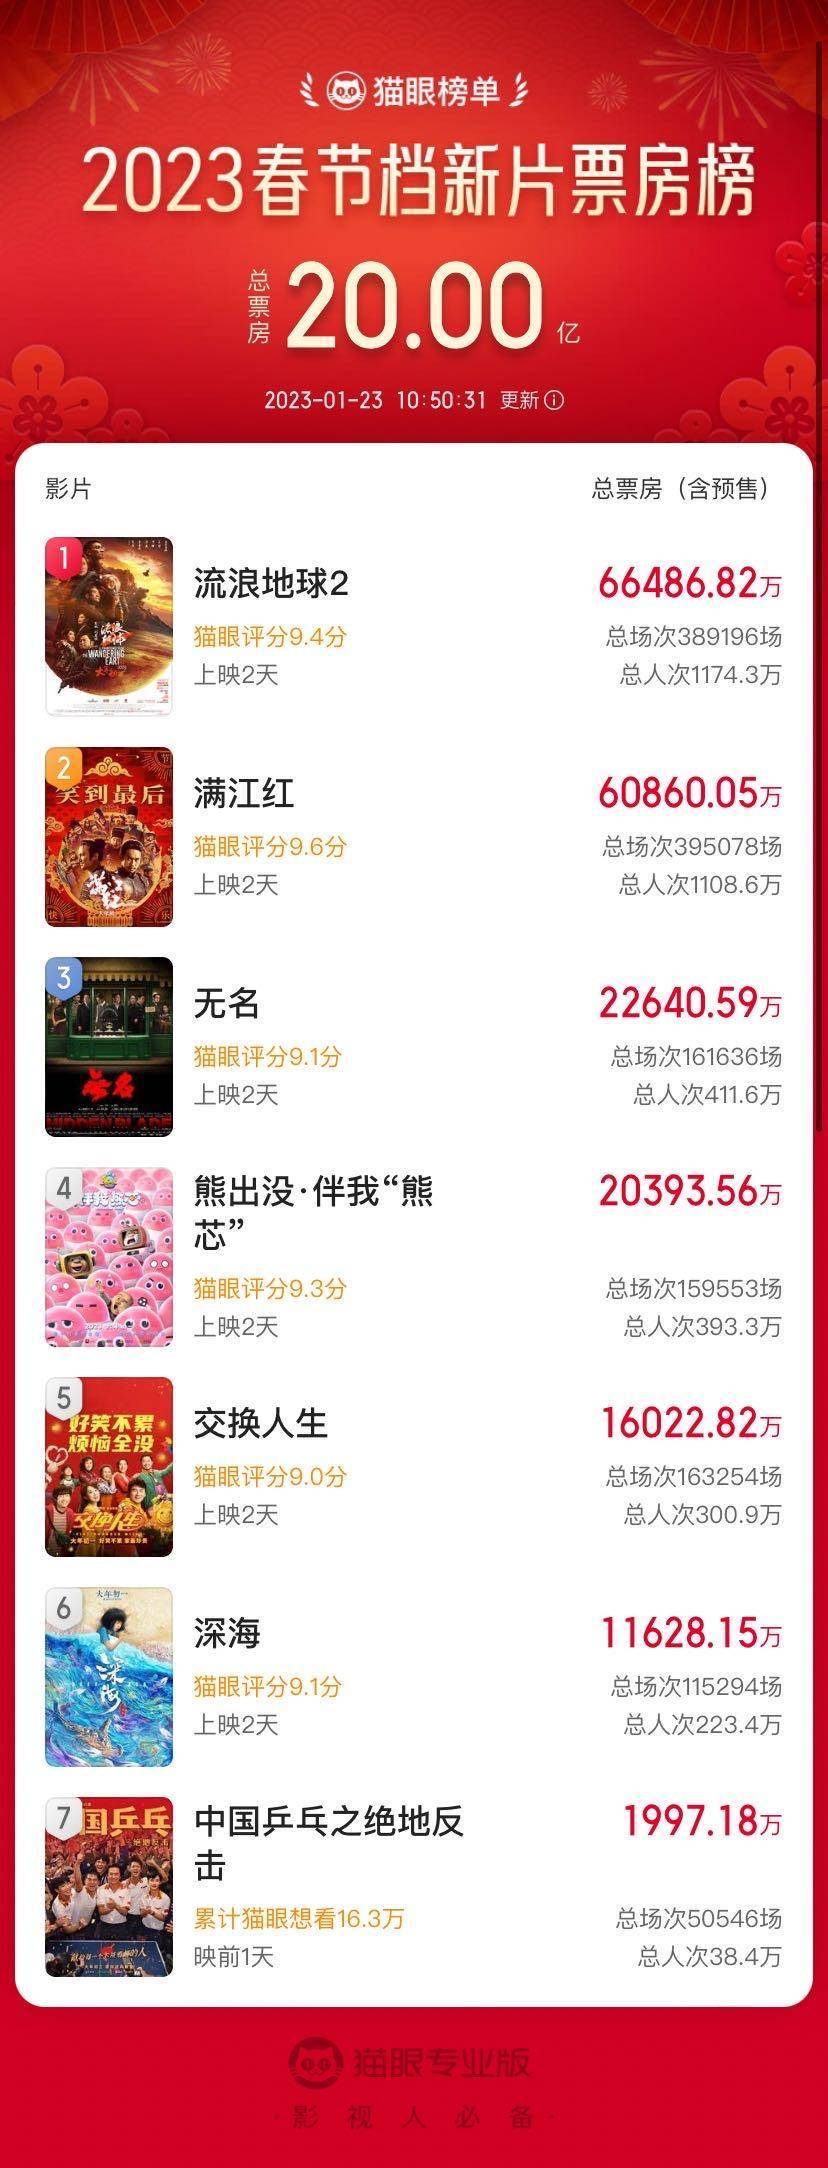 流浪派画家苹果版
:2023春节档新片票房破20亿元